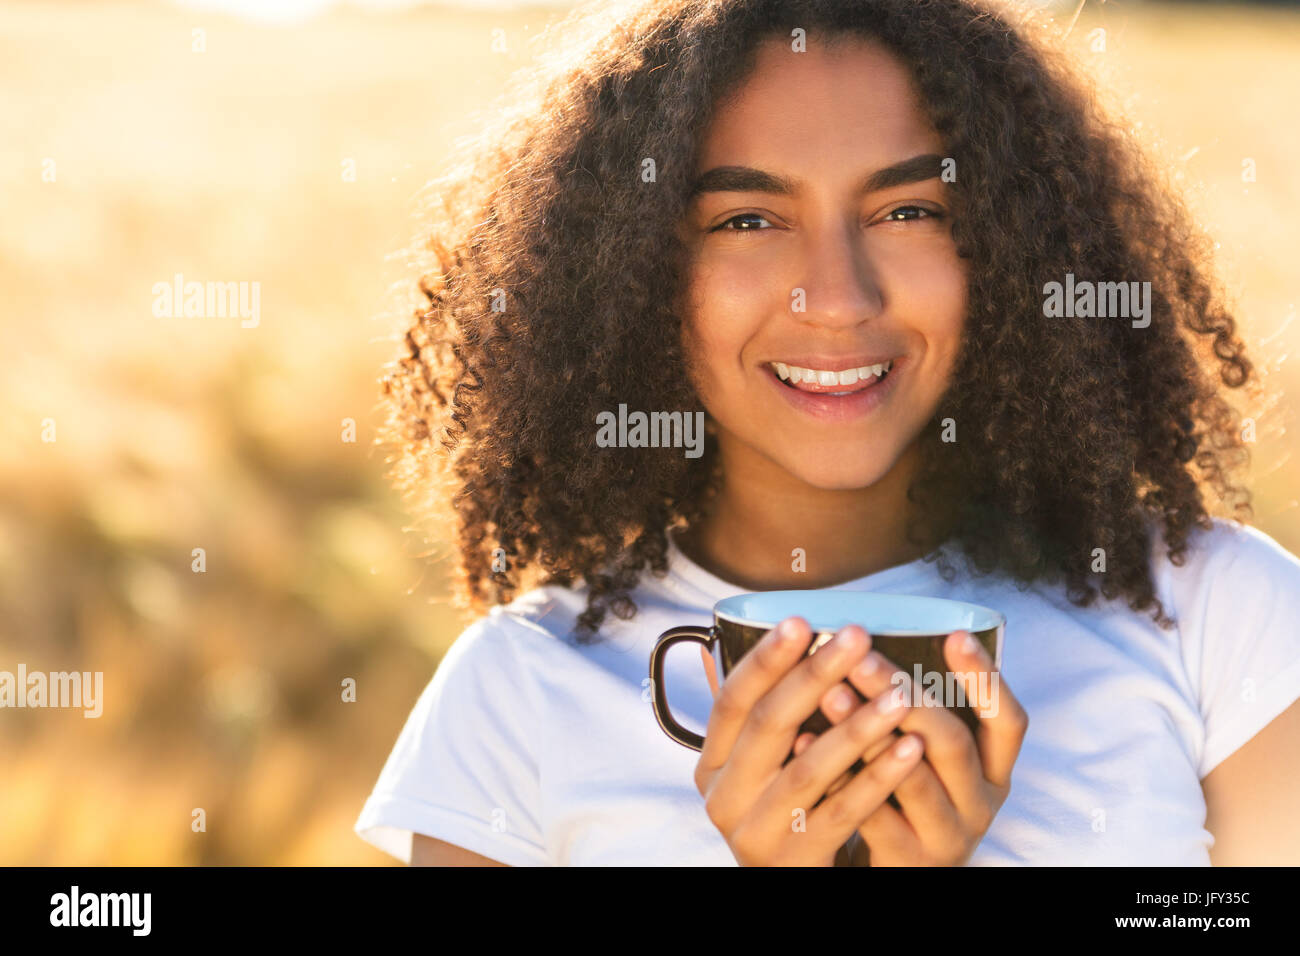 Feliz hermosa chica americana africana de raza mixta femenina adolescente joven sonriendo con dientes perfectos blanca,beber café o té en el exterior Foto de stock